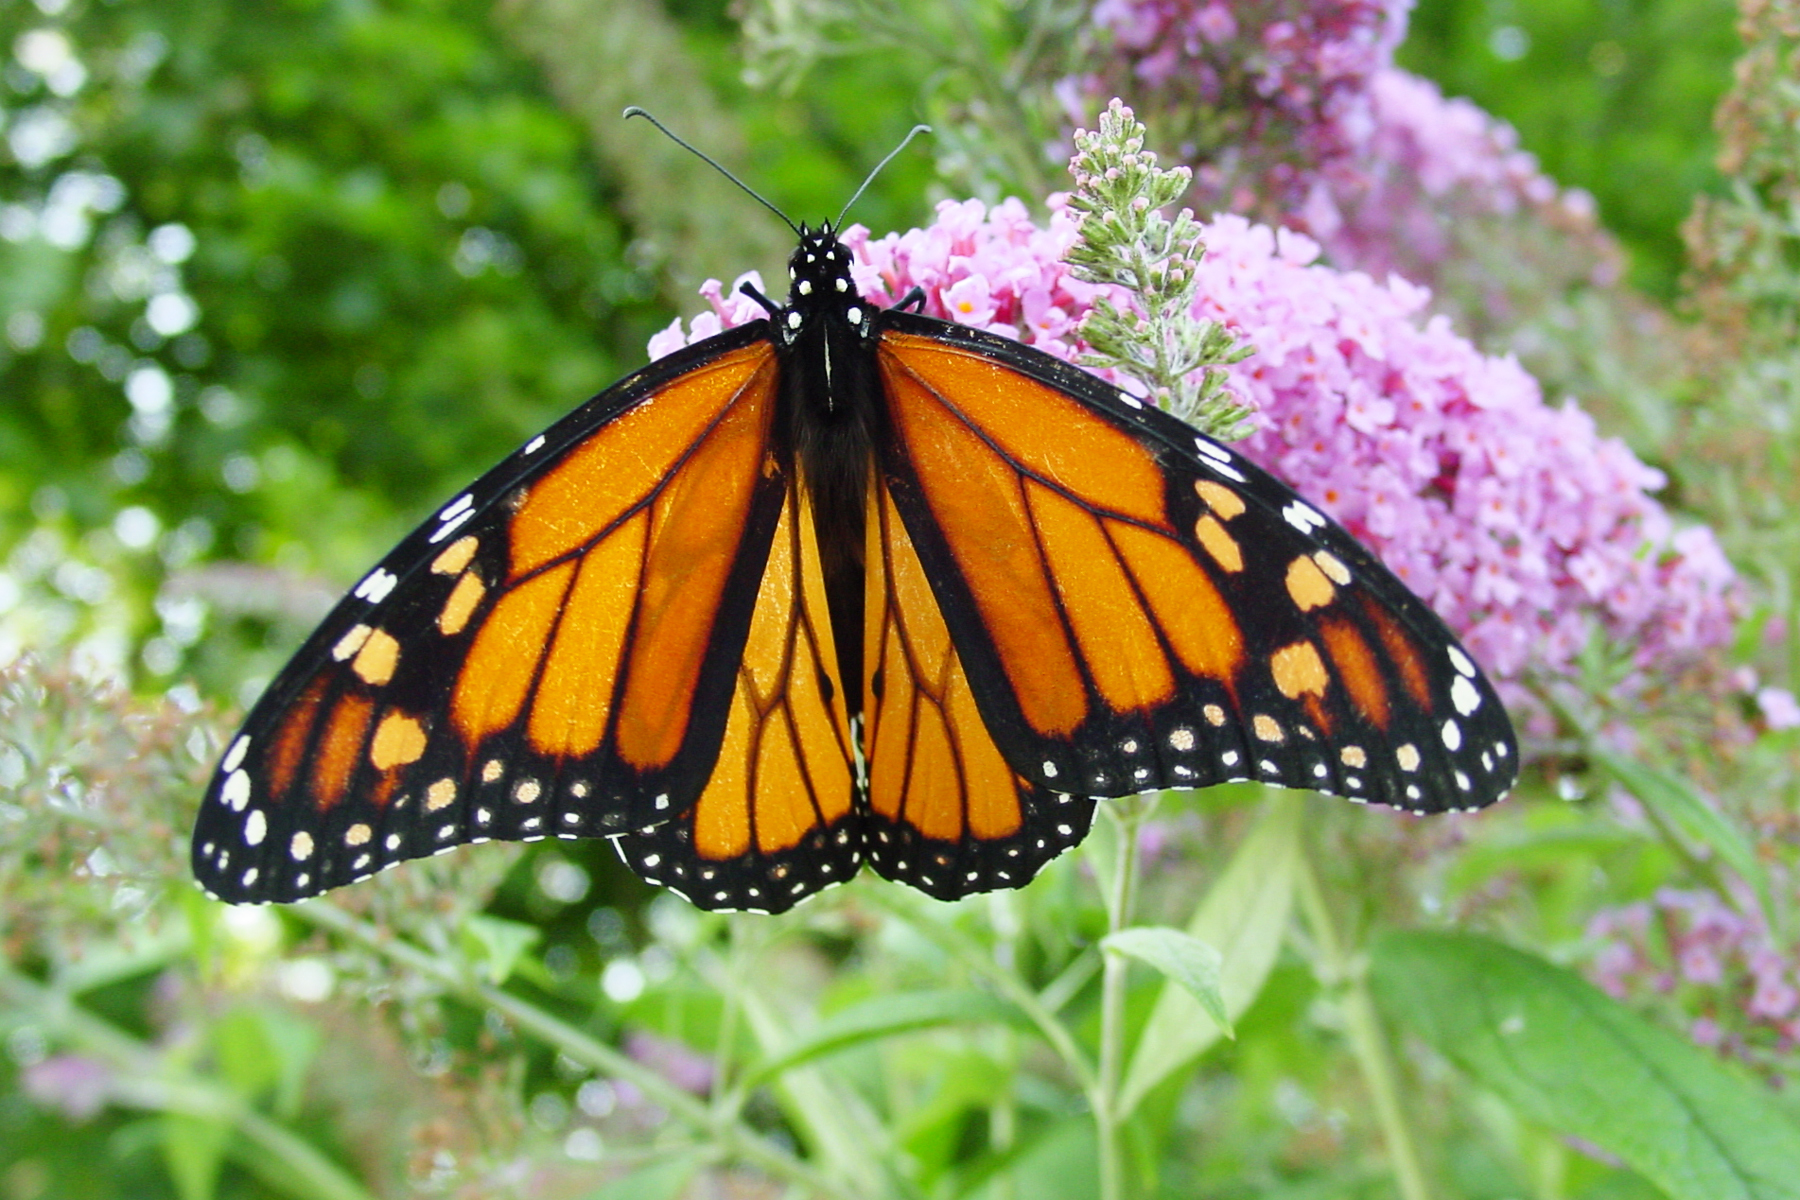 file-male-monarch-butterfly-jpg-wikimedia-commons